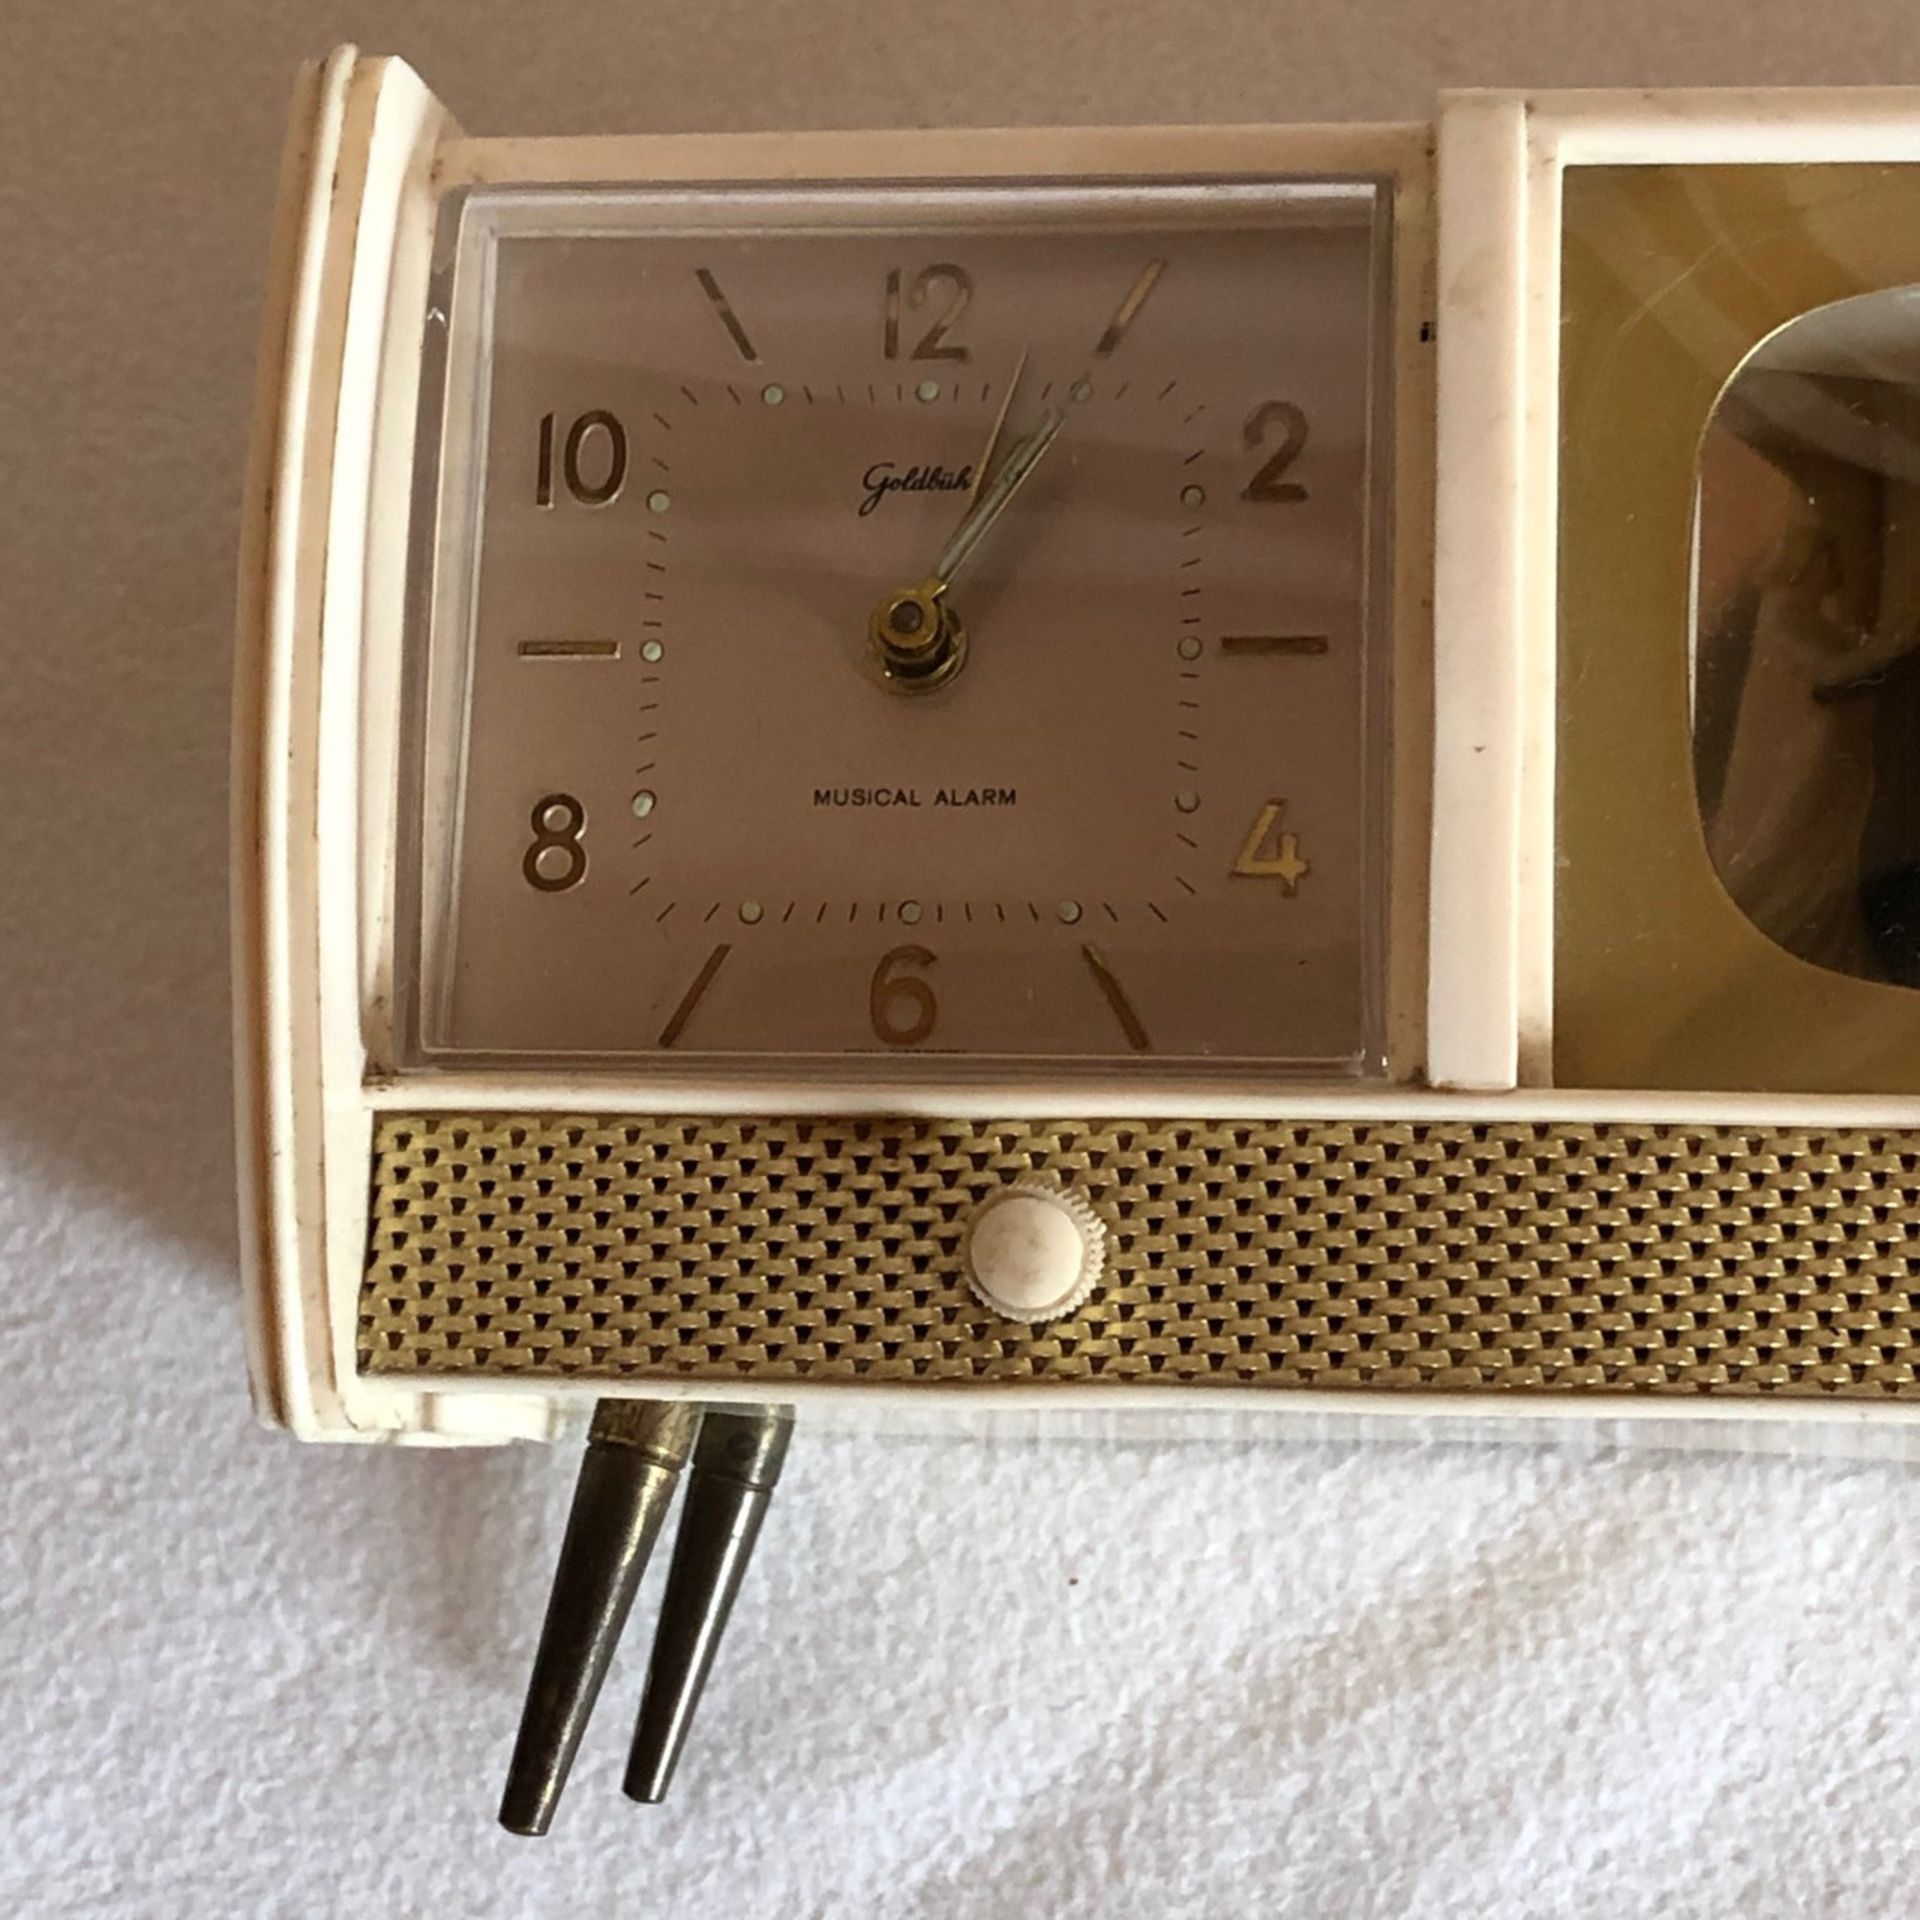 Radiowecker, 50er Jahre, tanzendes Hochzeitspaar, selten, funktionsfähig, gemarktet, 10 x 15 cm - Bild 2 aus 5